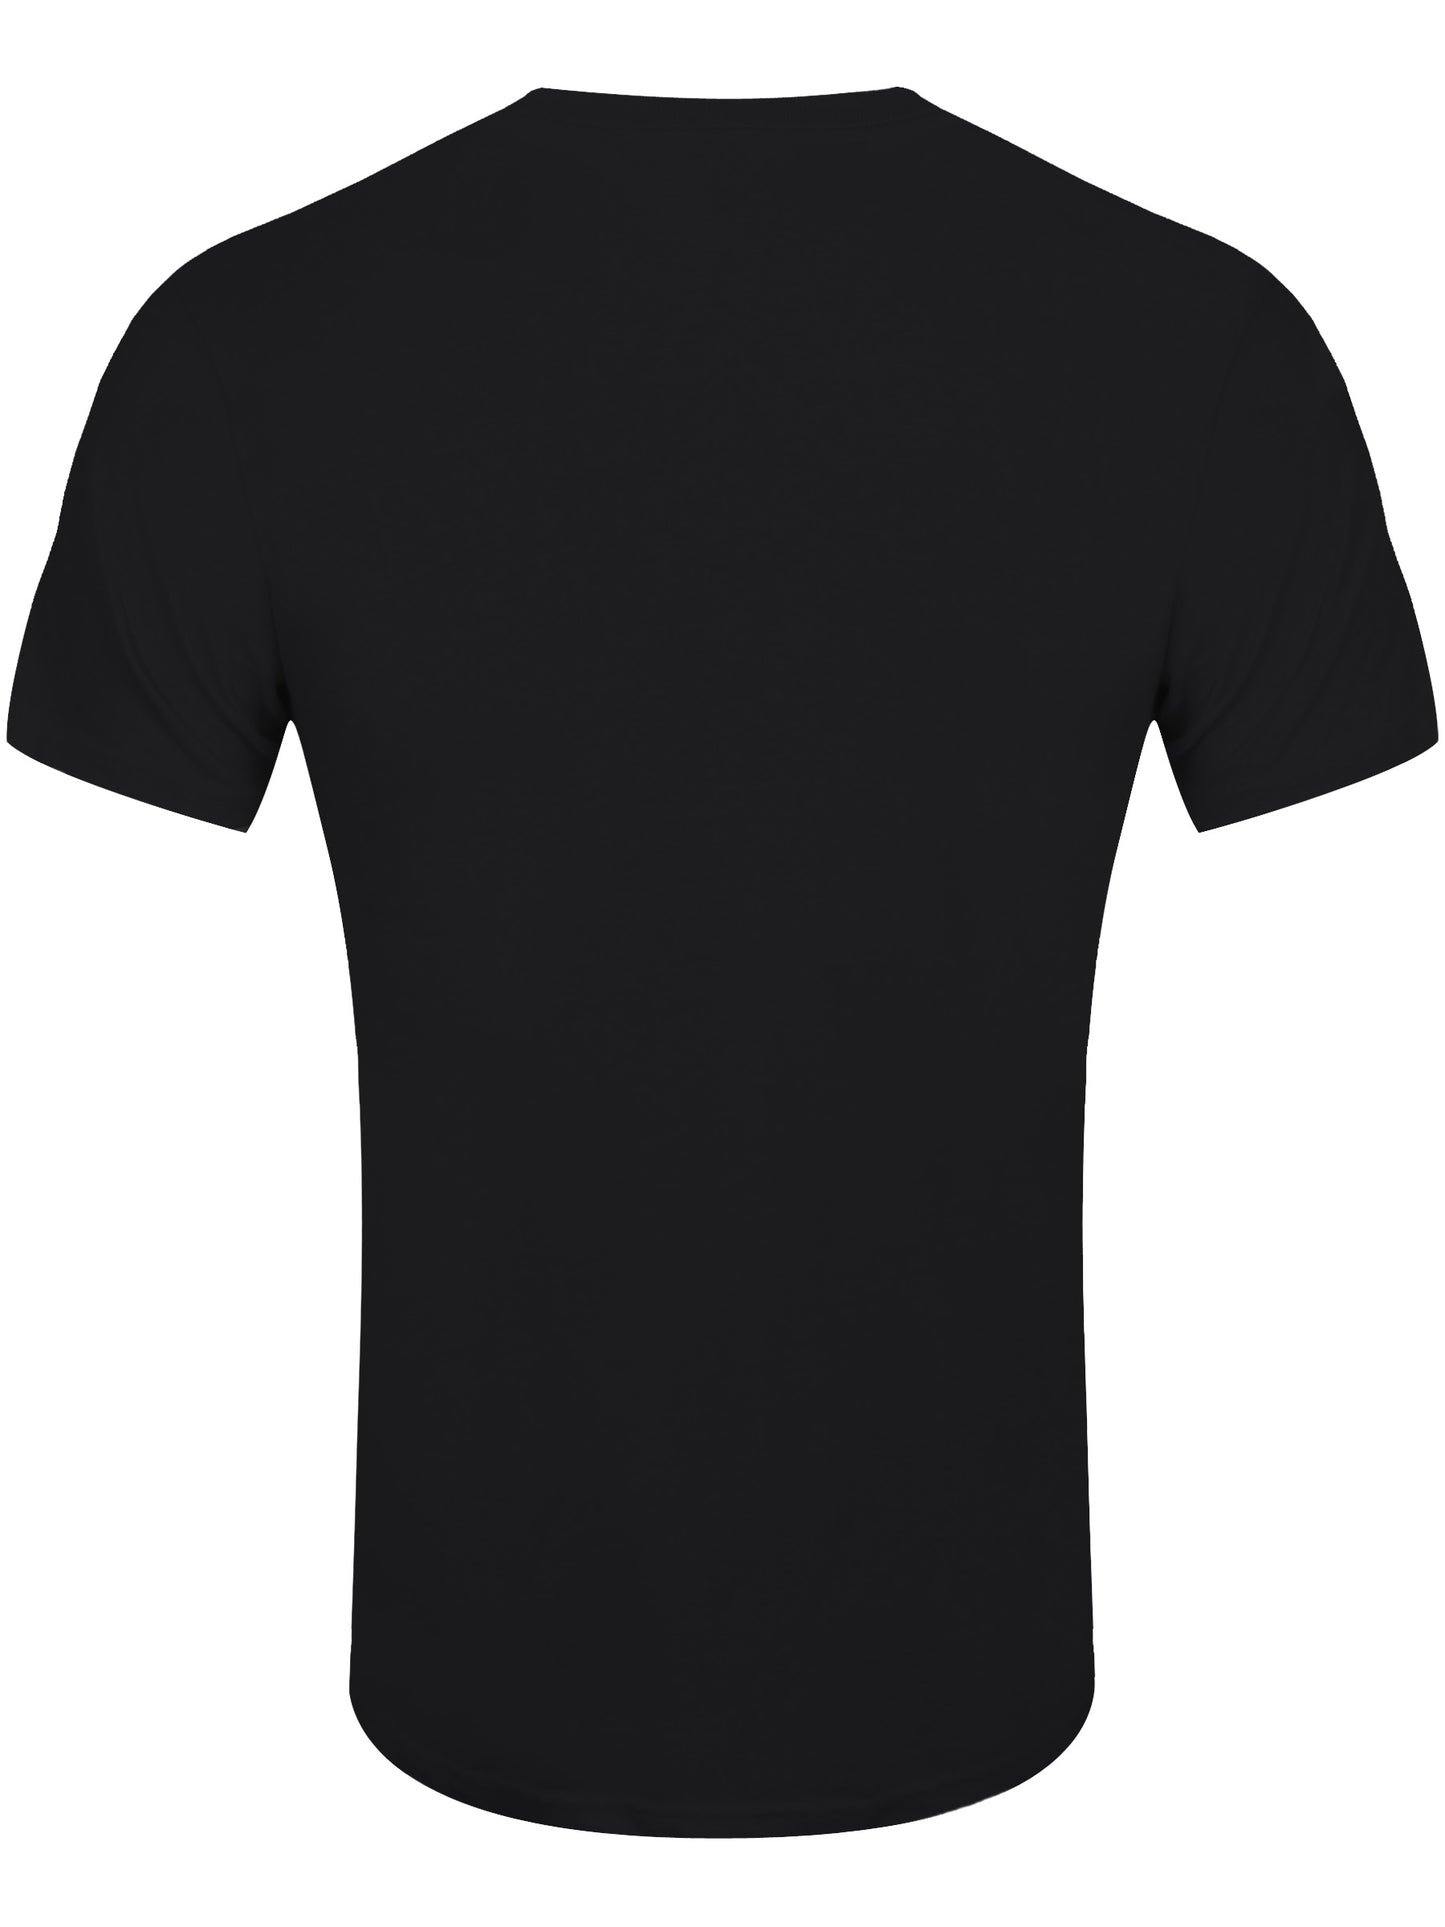 Umbrella Academy Comic Cover Men's Black T-Shirt